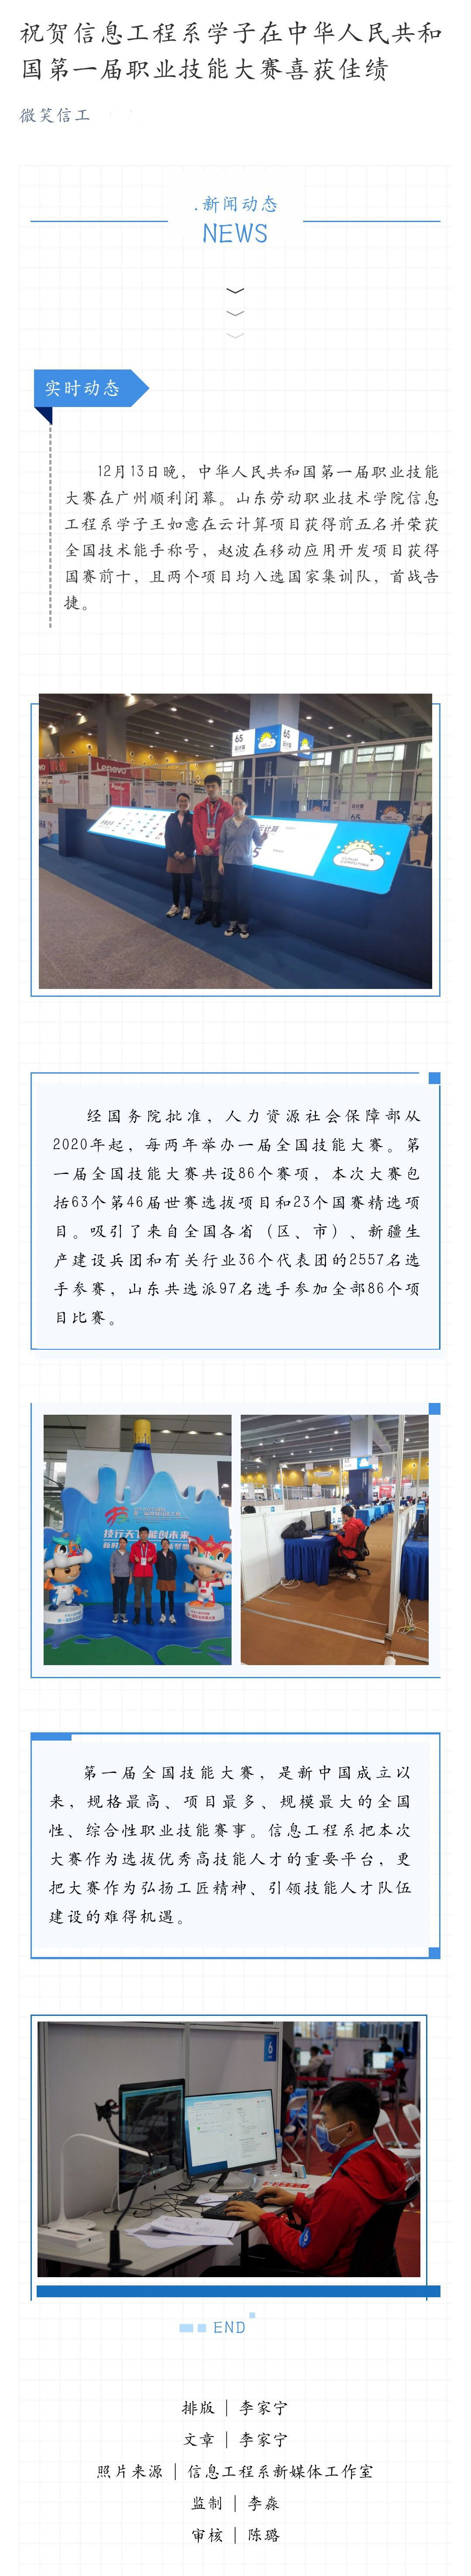 祝贺信息工程系学子在中华人民共和国第一届职业技能大赛喜获佳绩.jpg